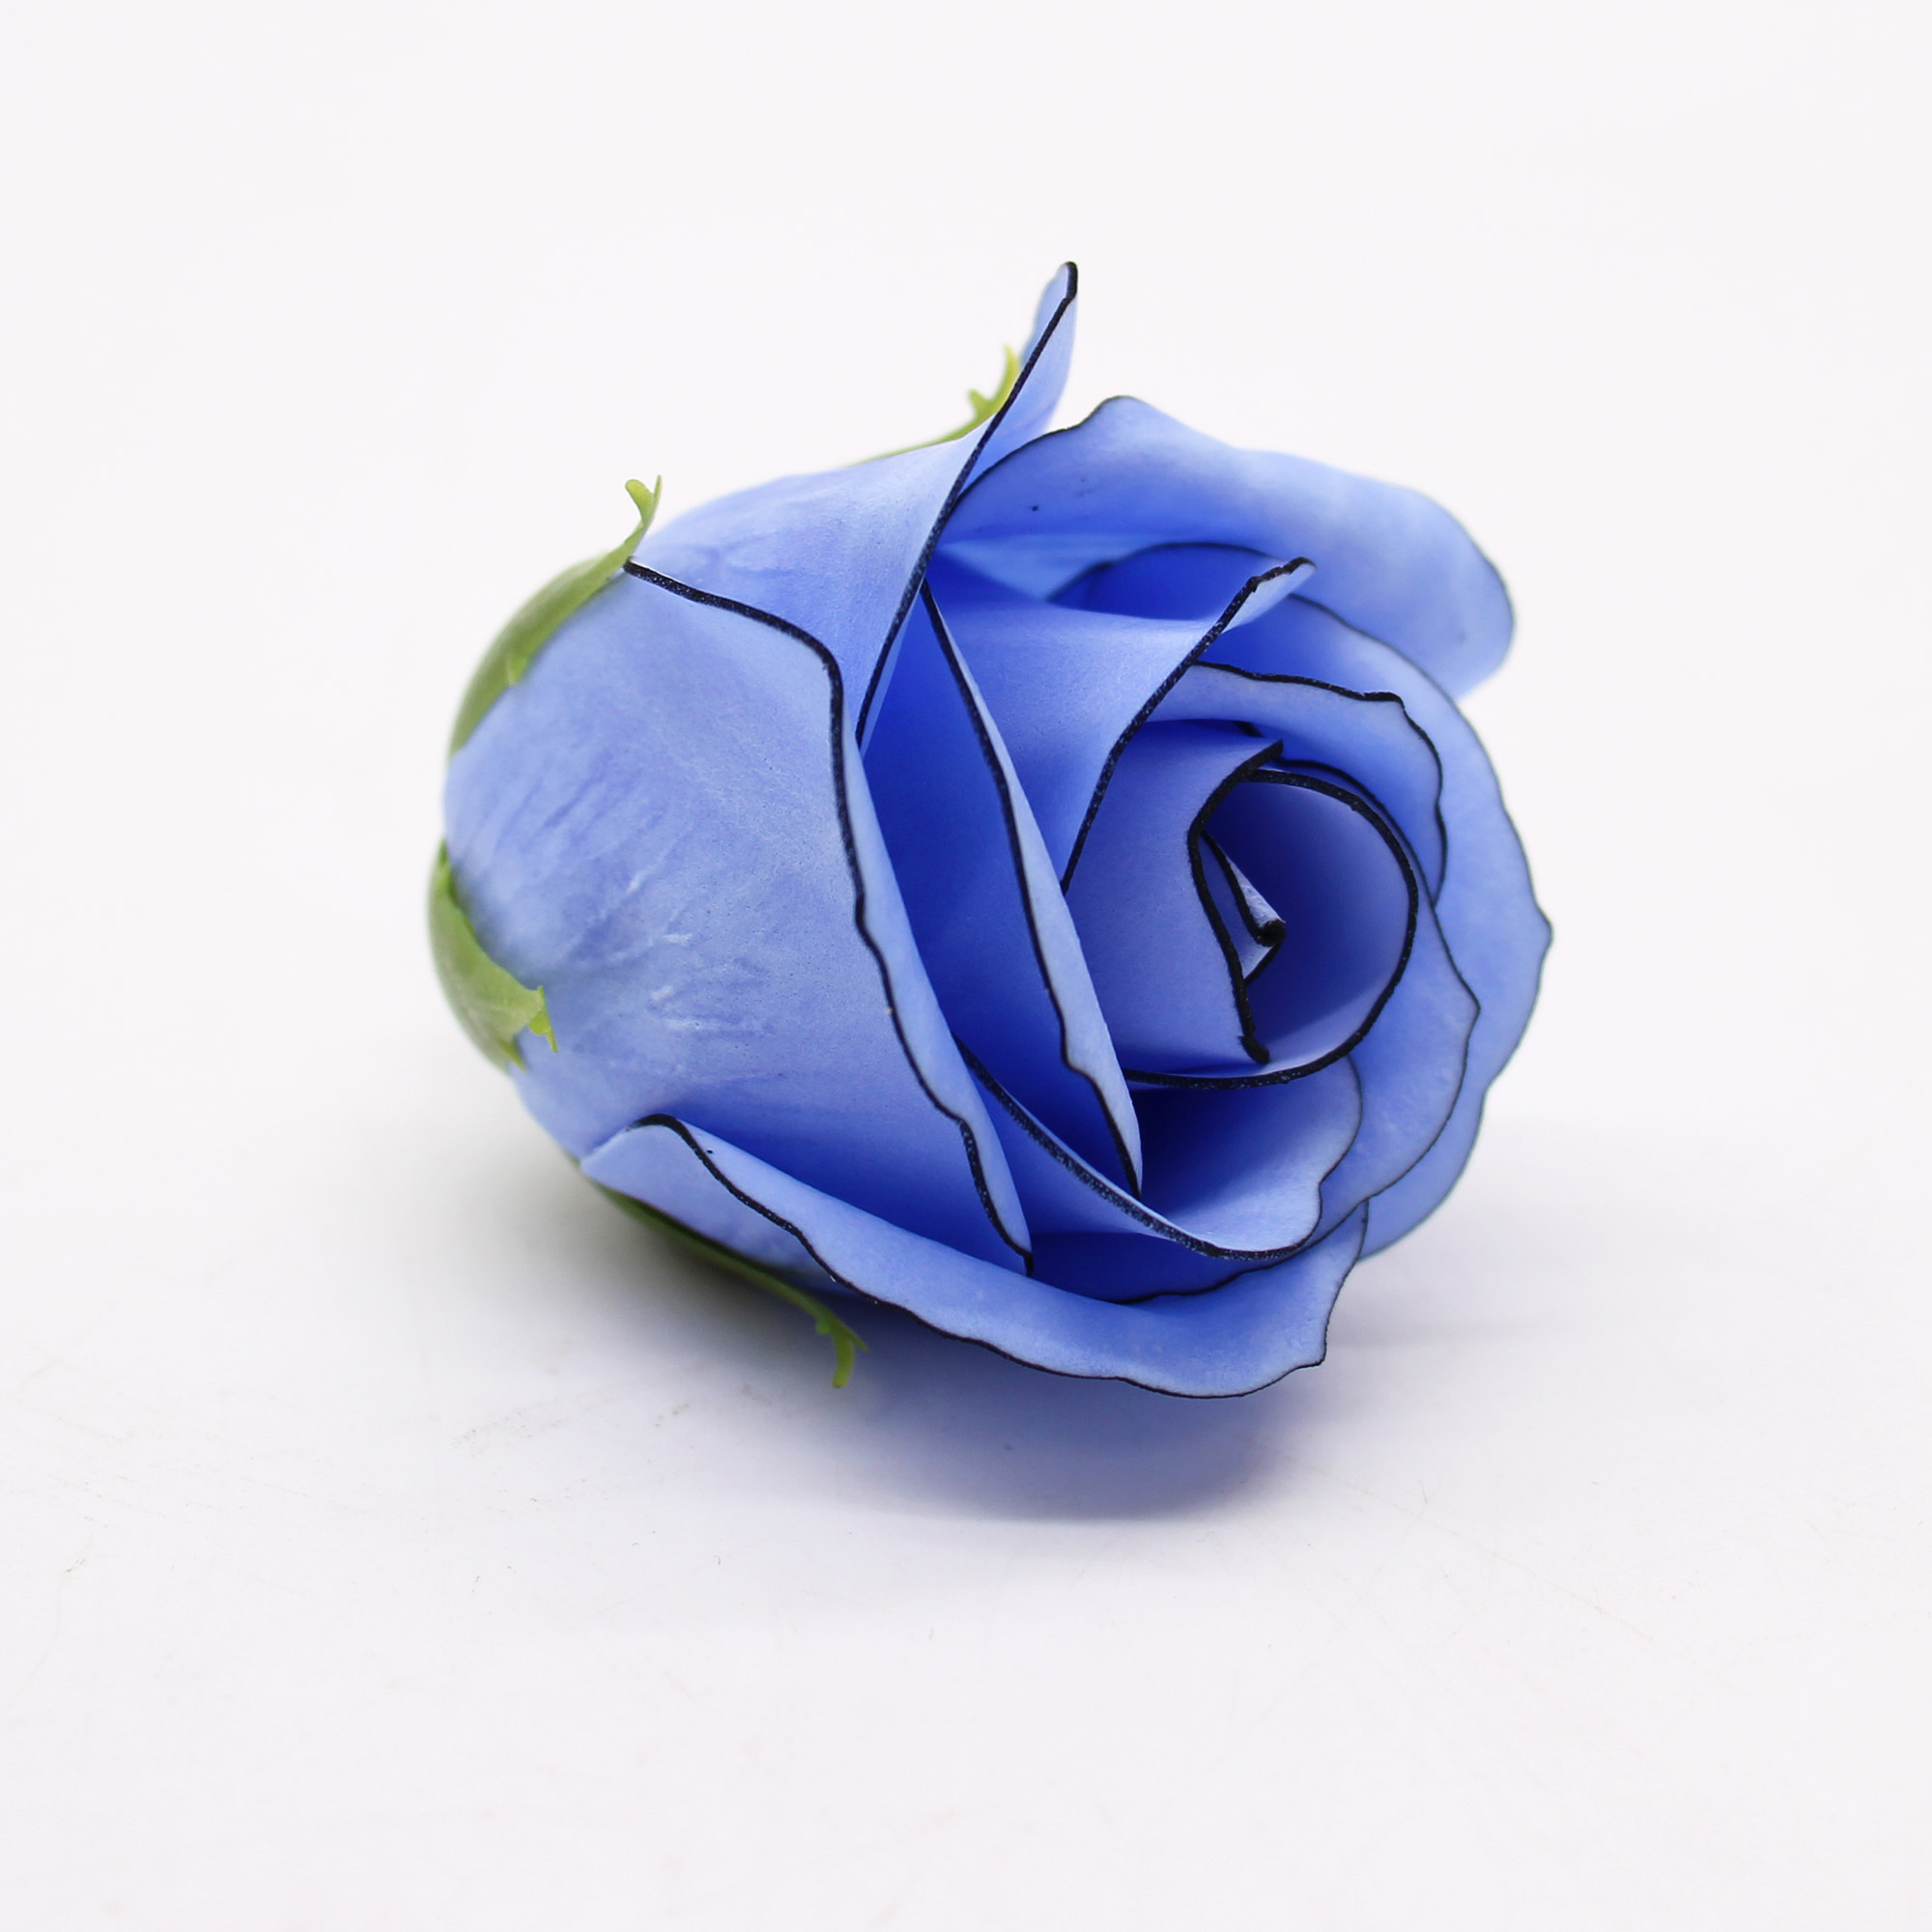 Craft Soap Flowers - Med Rose - Blue With Black Rim